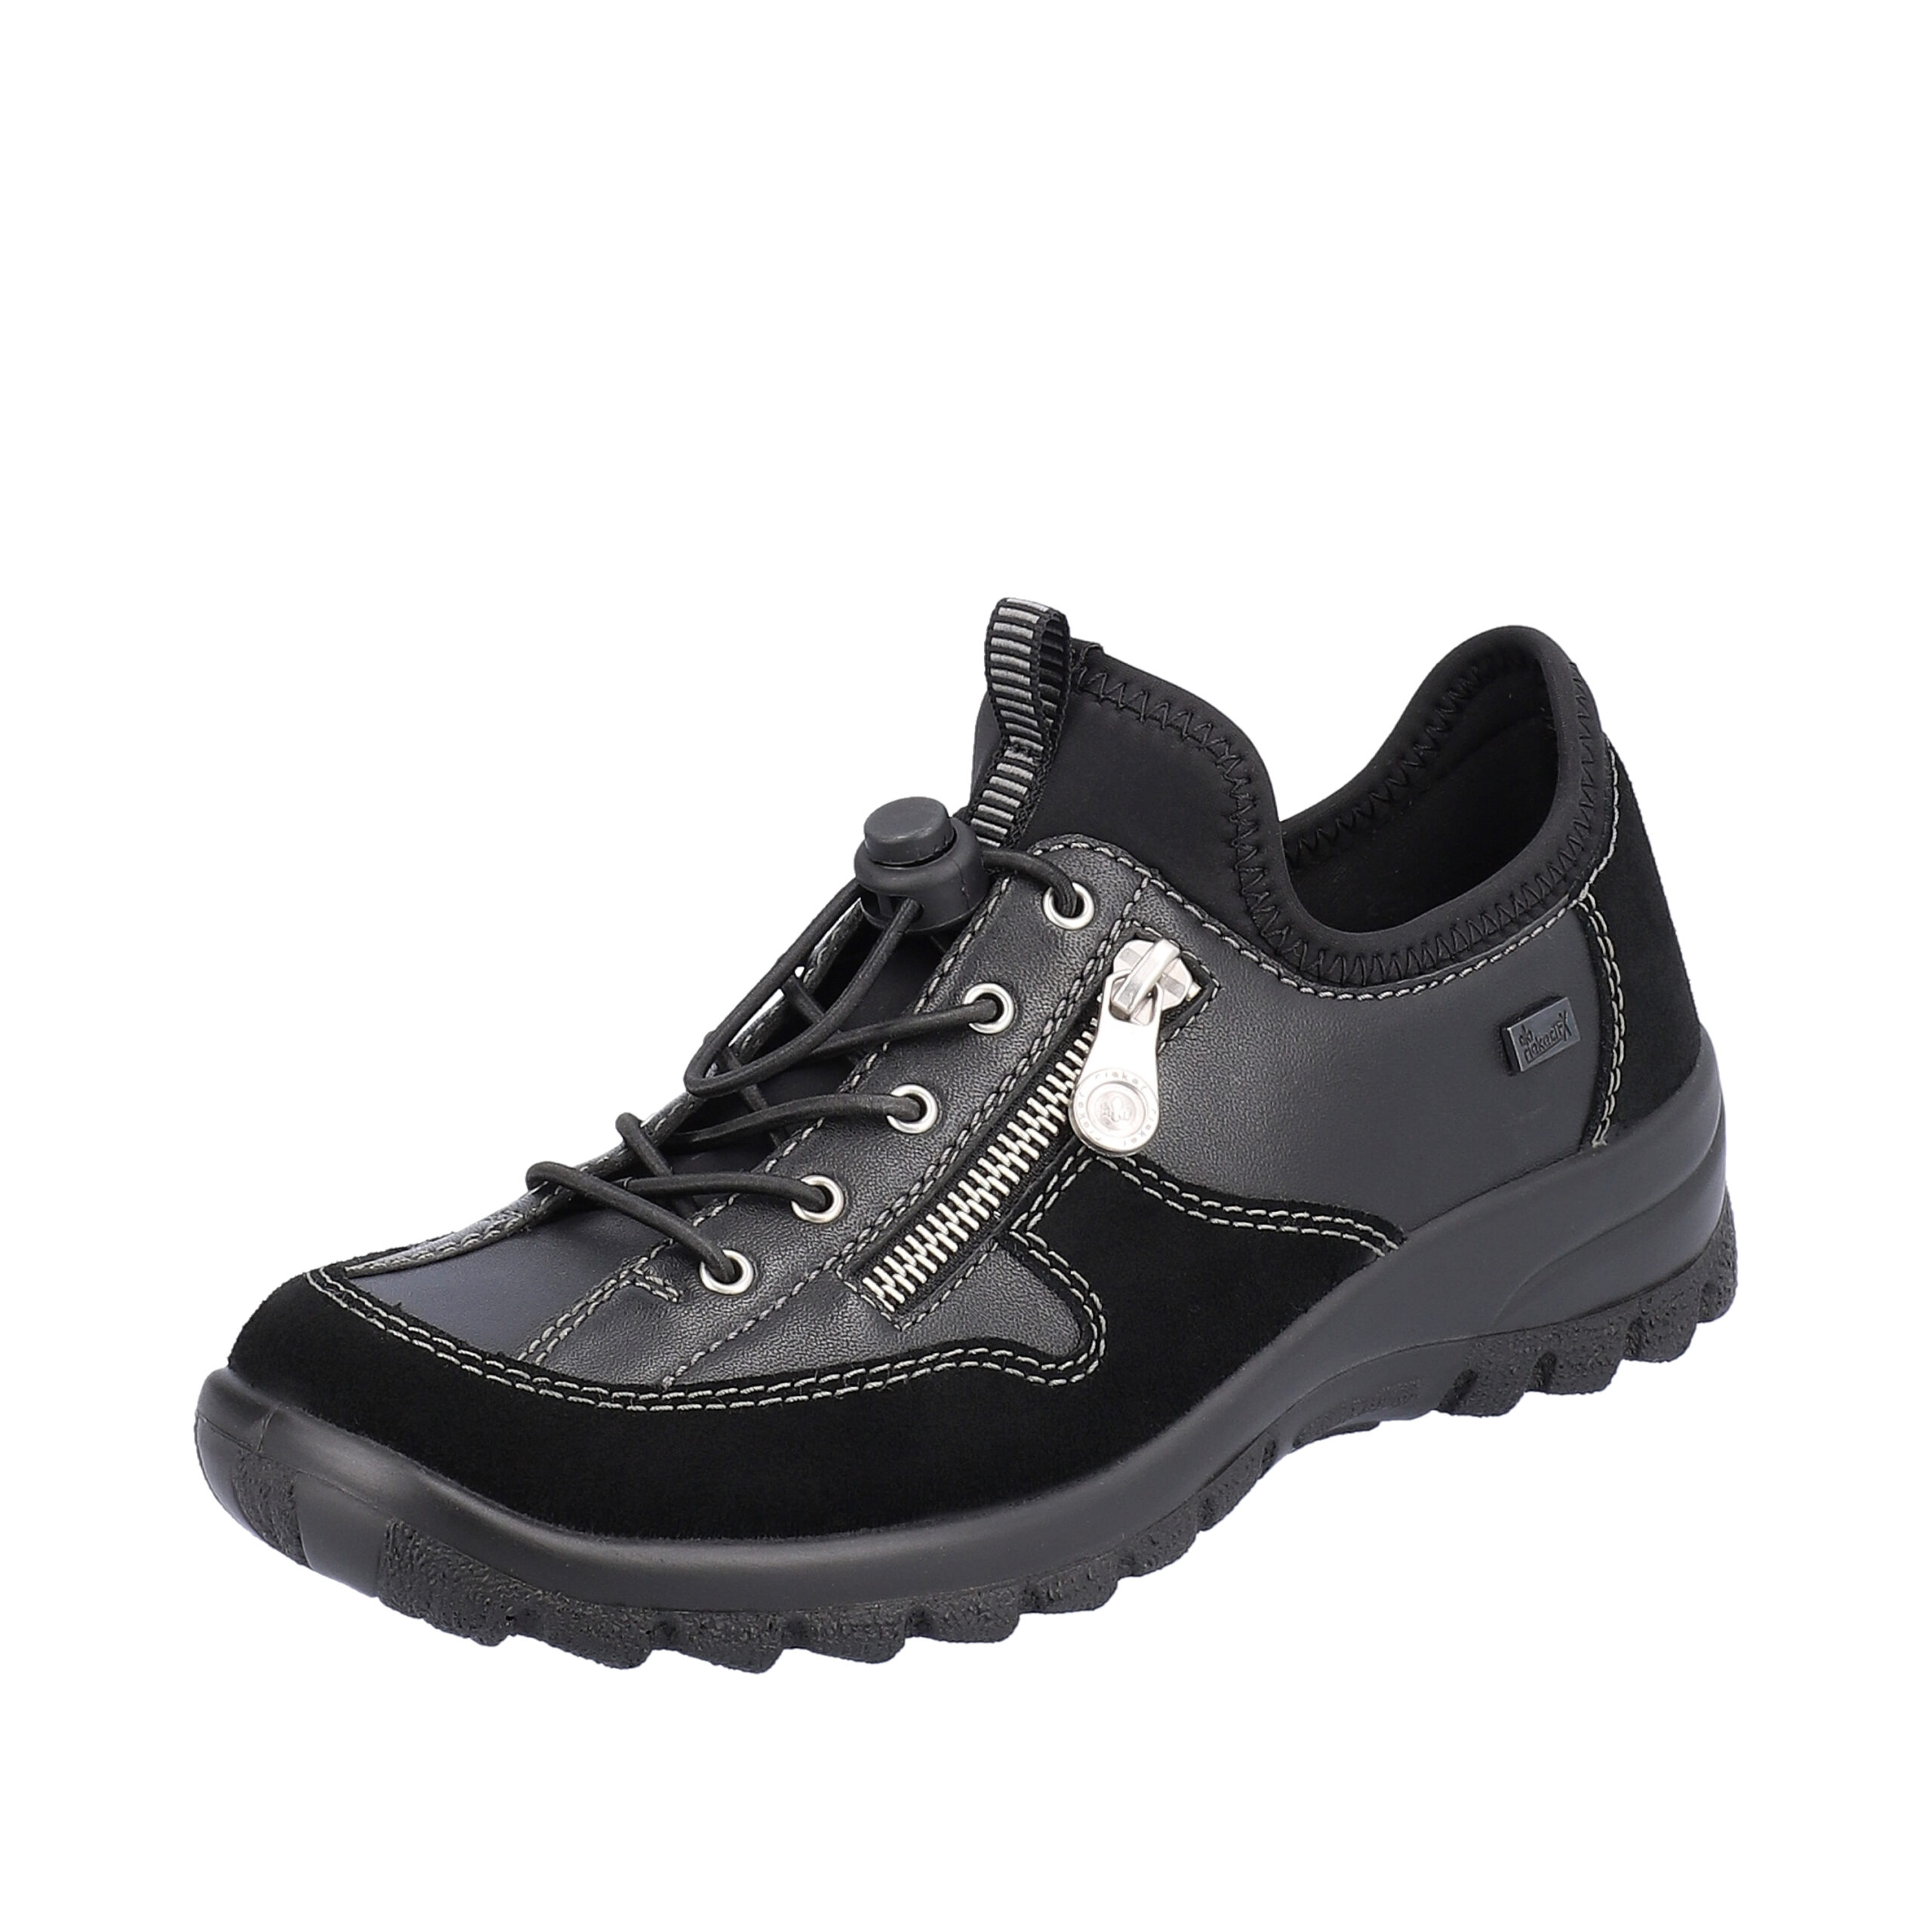 sko til dame sort | Model: L7157-00 |